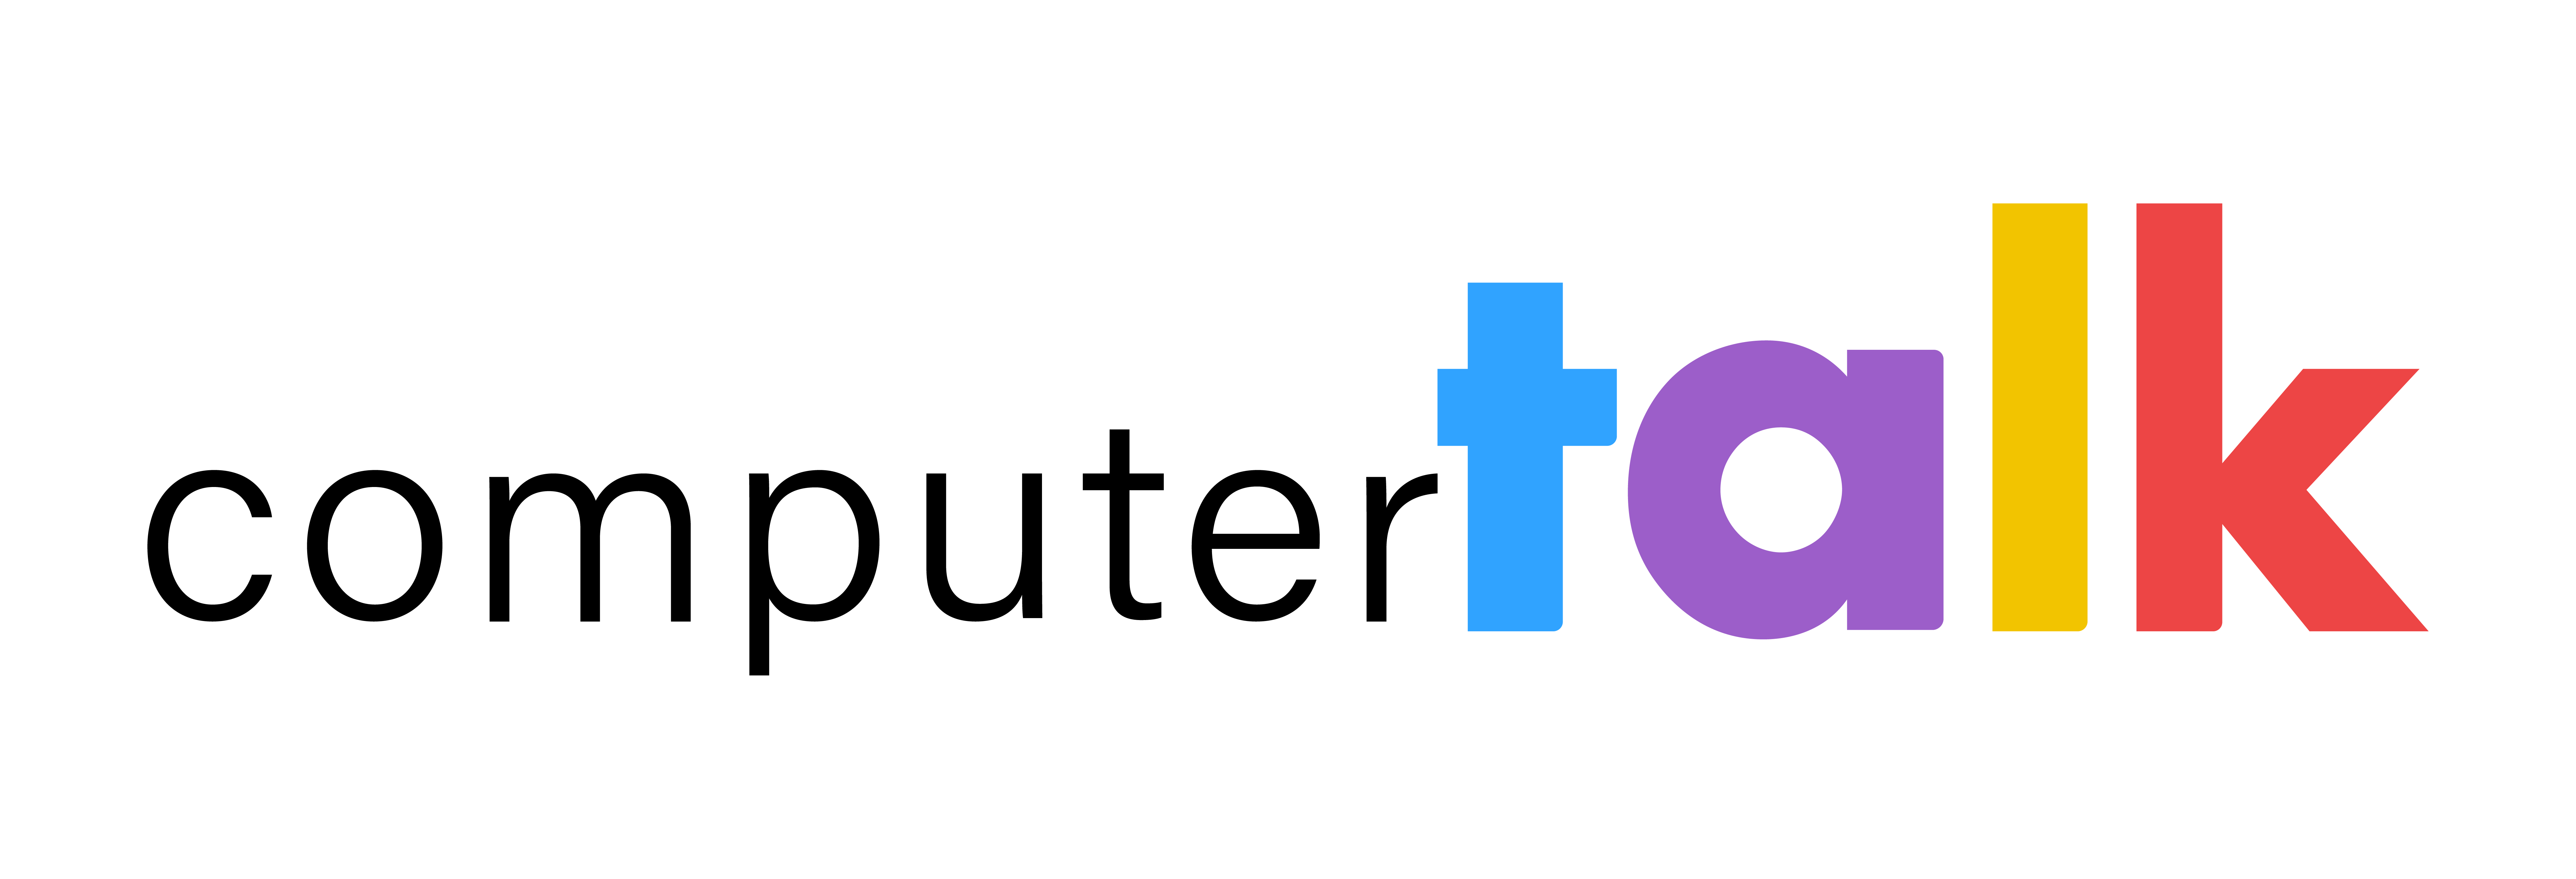 The Talking Friends Movie (2016) Logo by AlexTheTetrisFan on DeviantArt